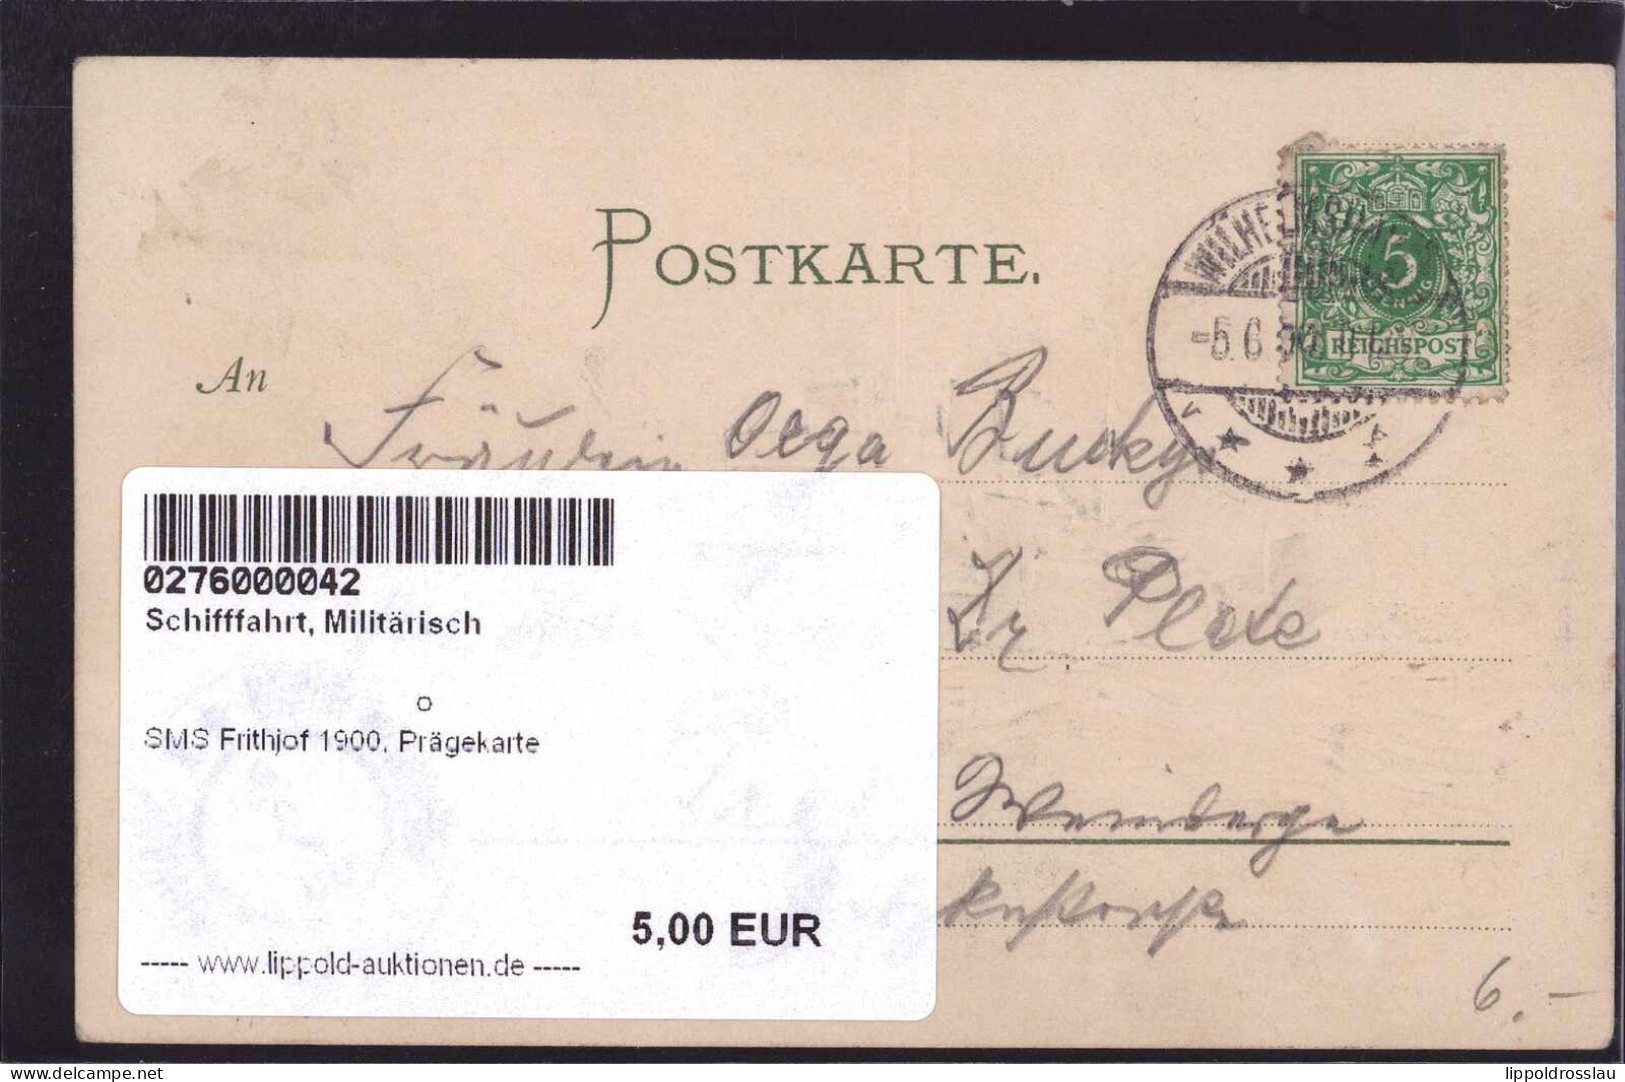 SMS Frithjof 1900, Prägekarte - Krieg